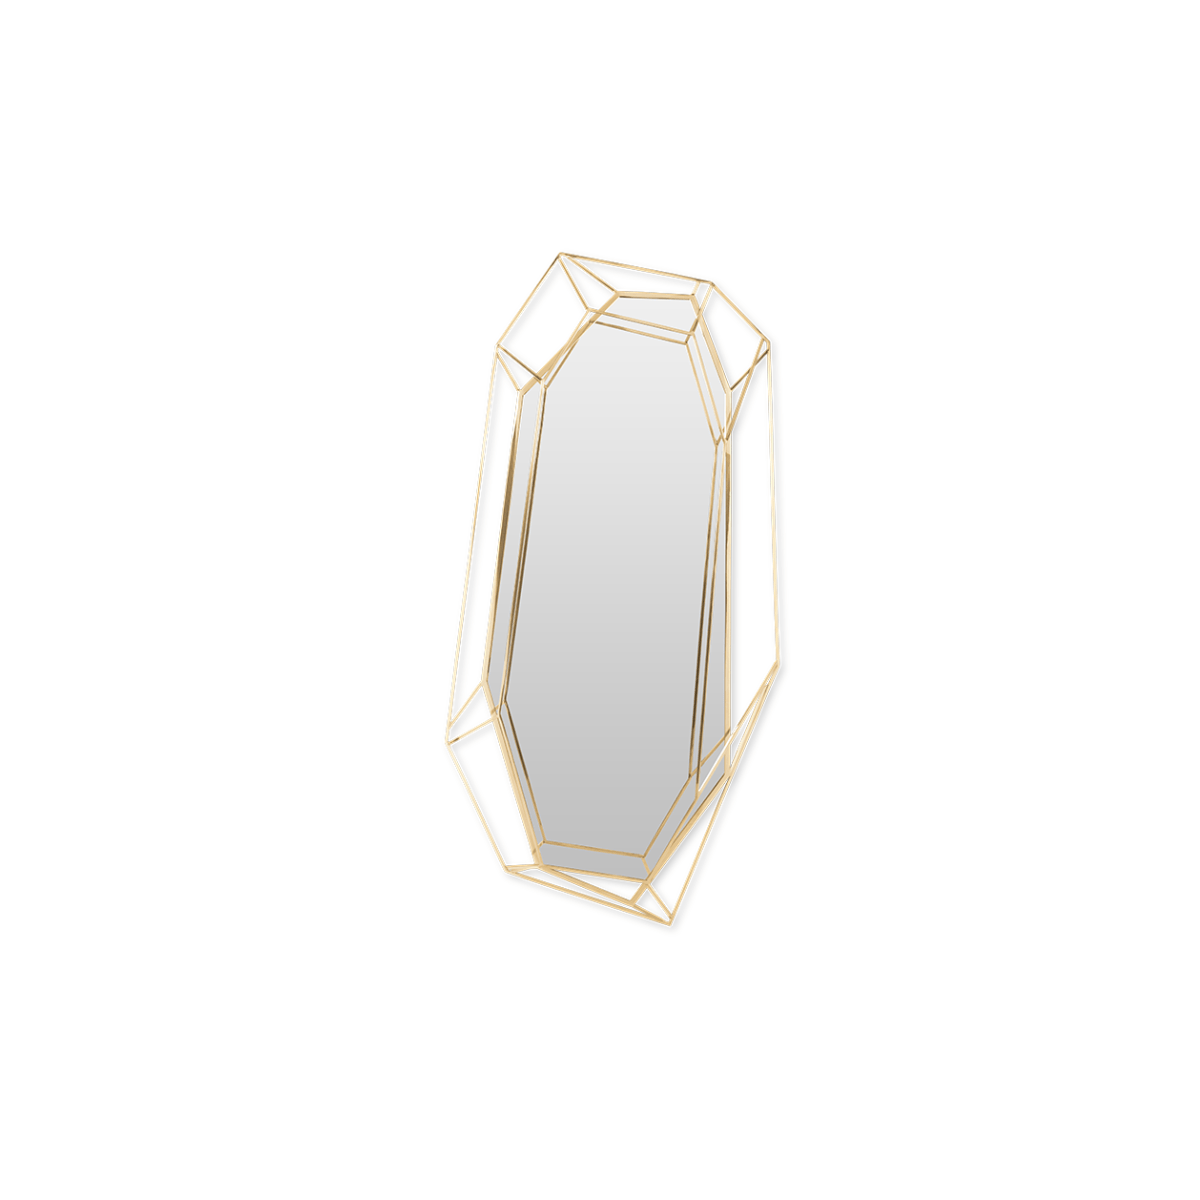 diamond big mirror essential home 01 Lumiere Console